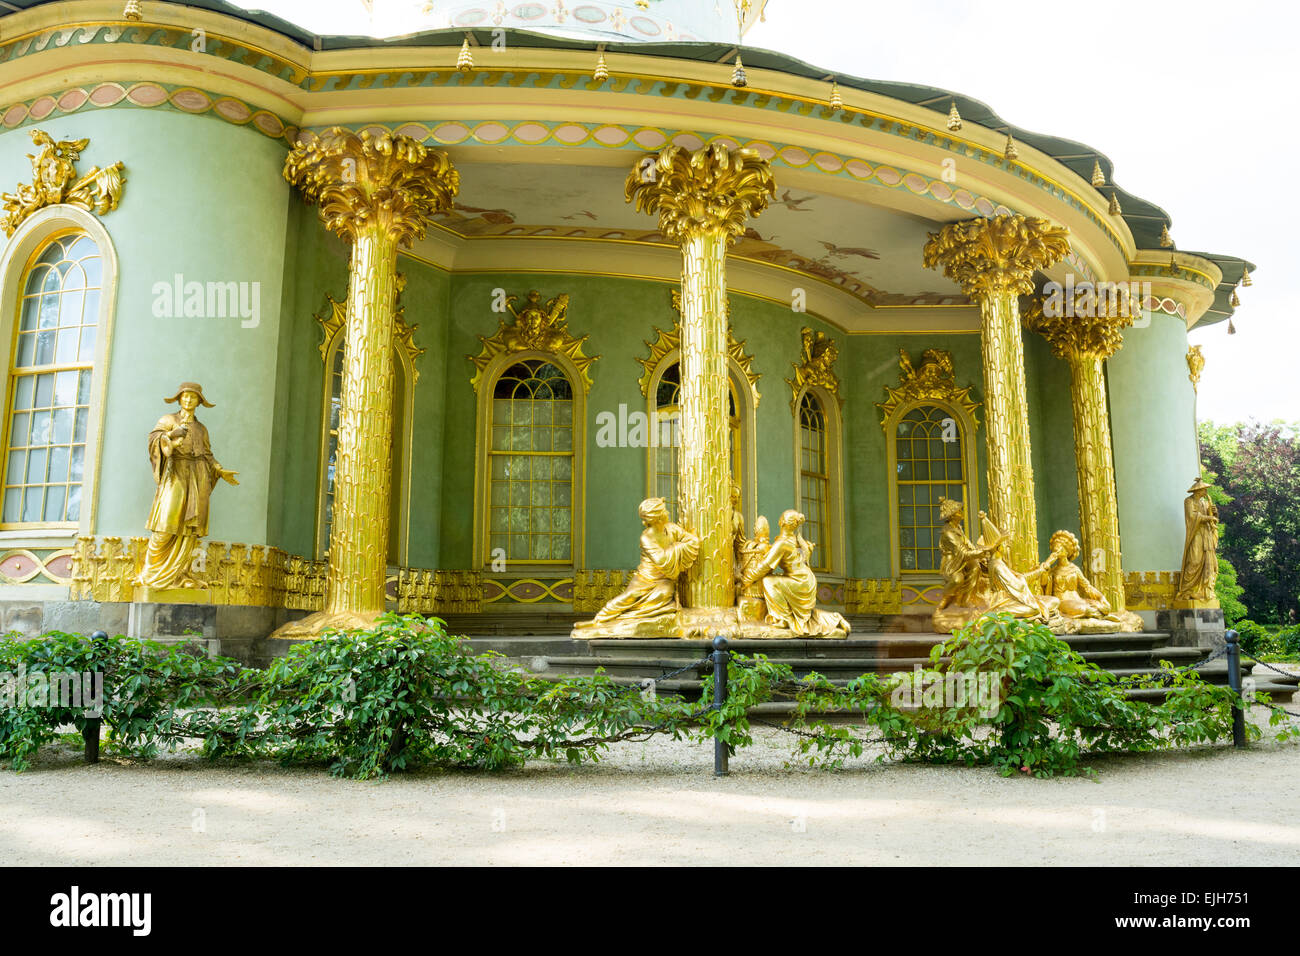 La maison chinoise, parc Sanssouci, Potsdam, Allemagne Banque D'Images